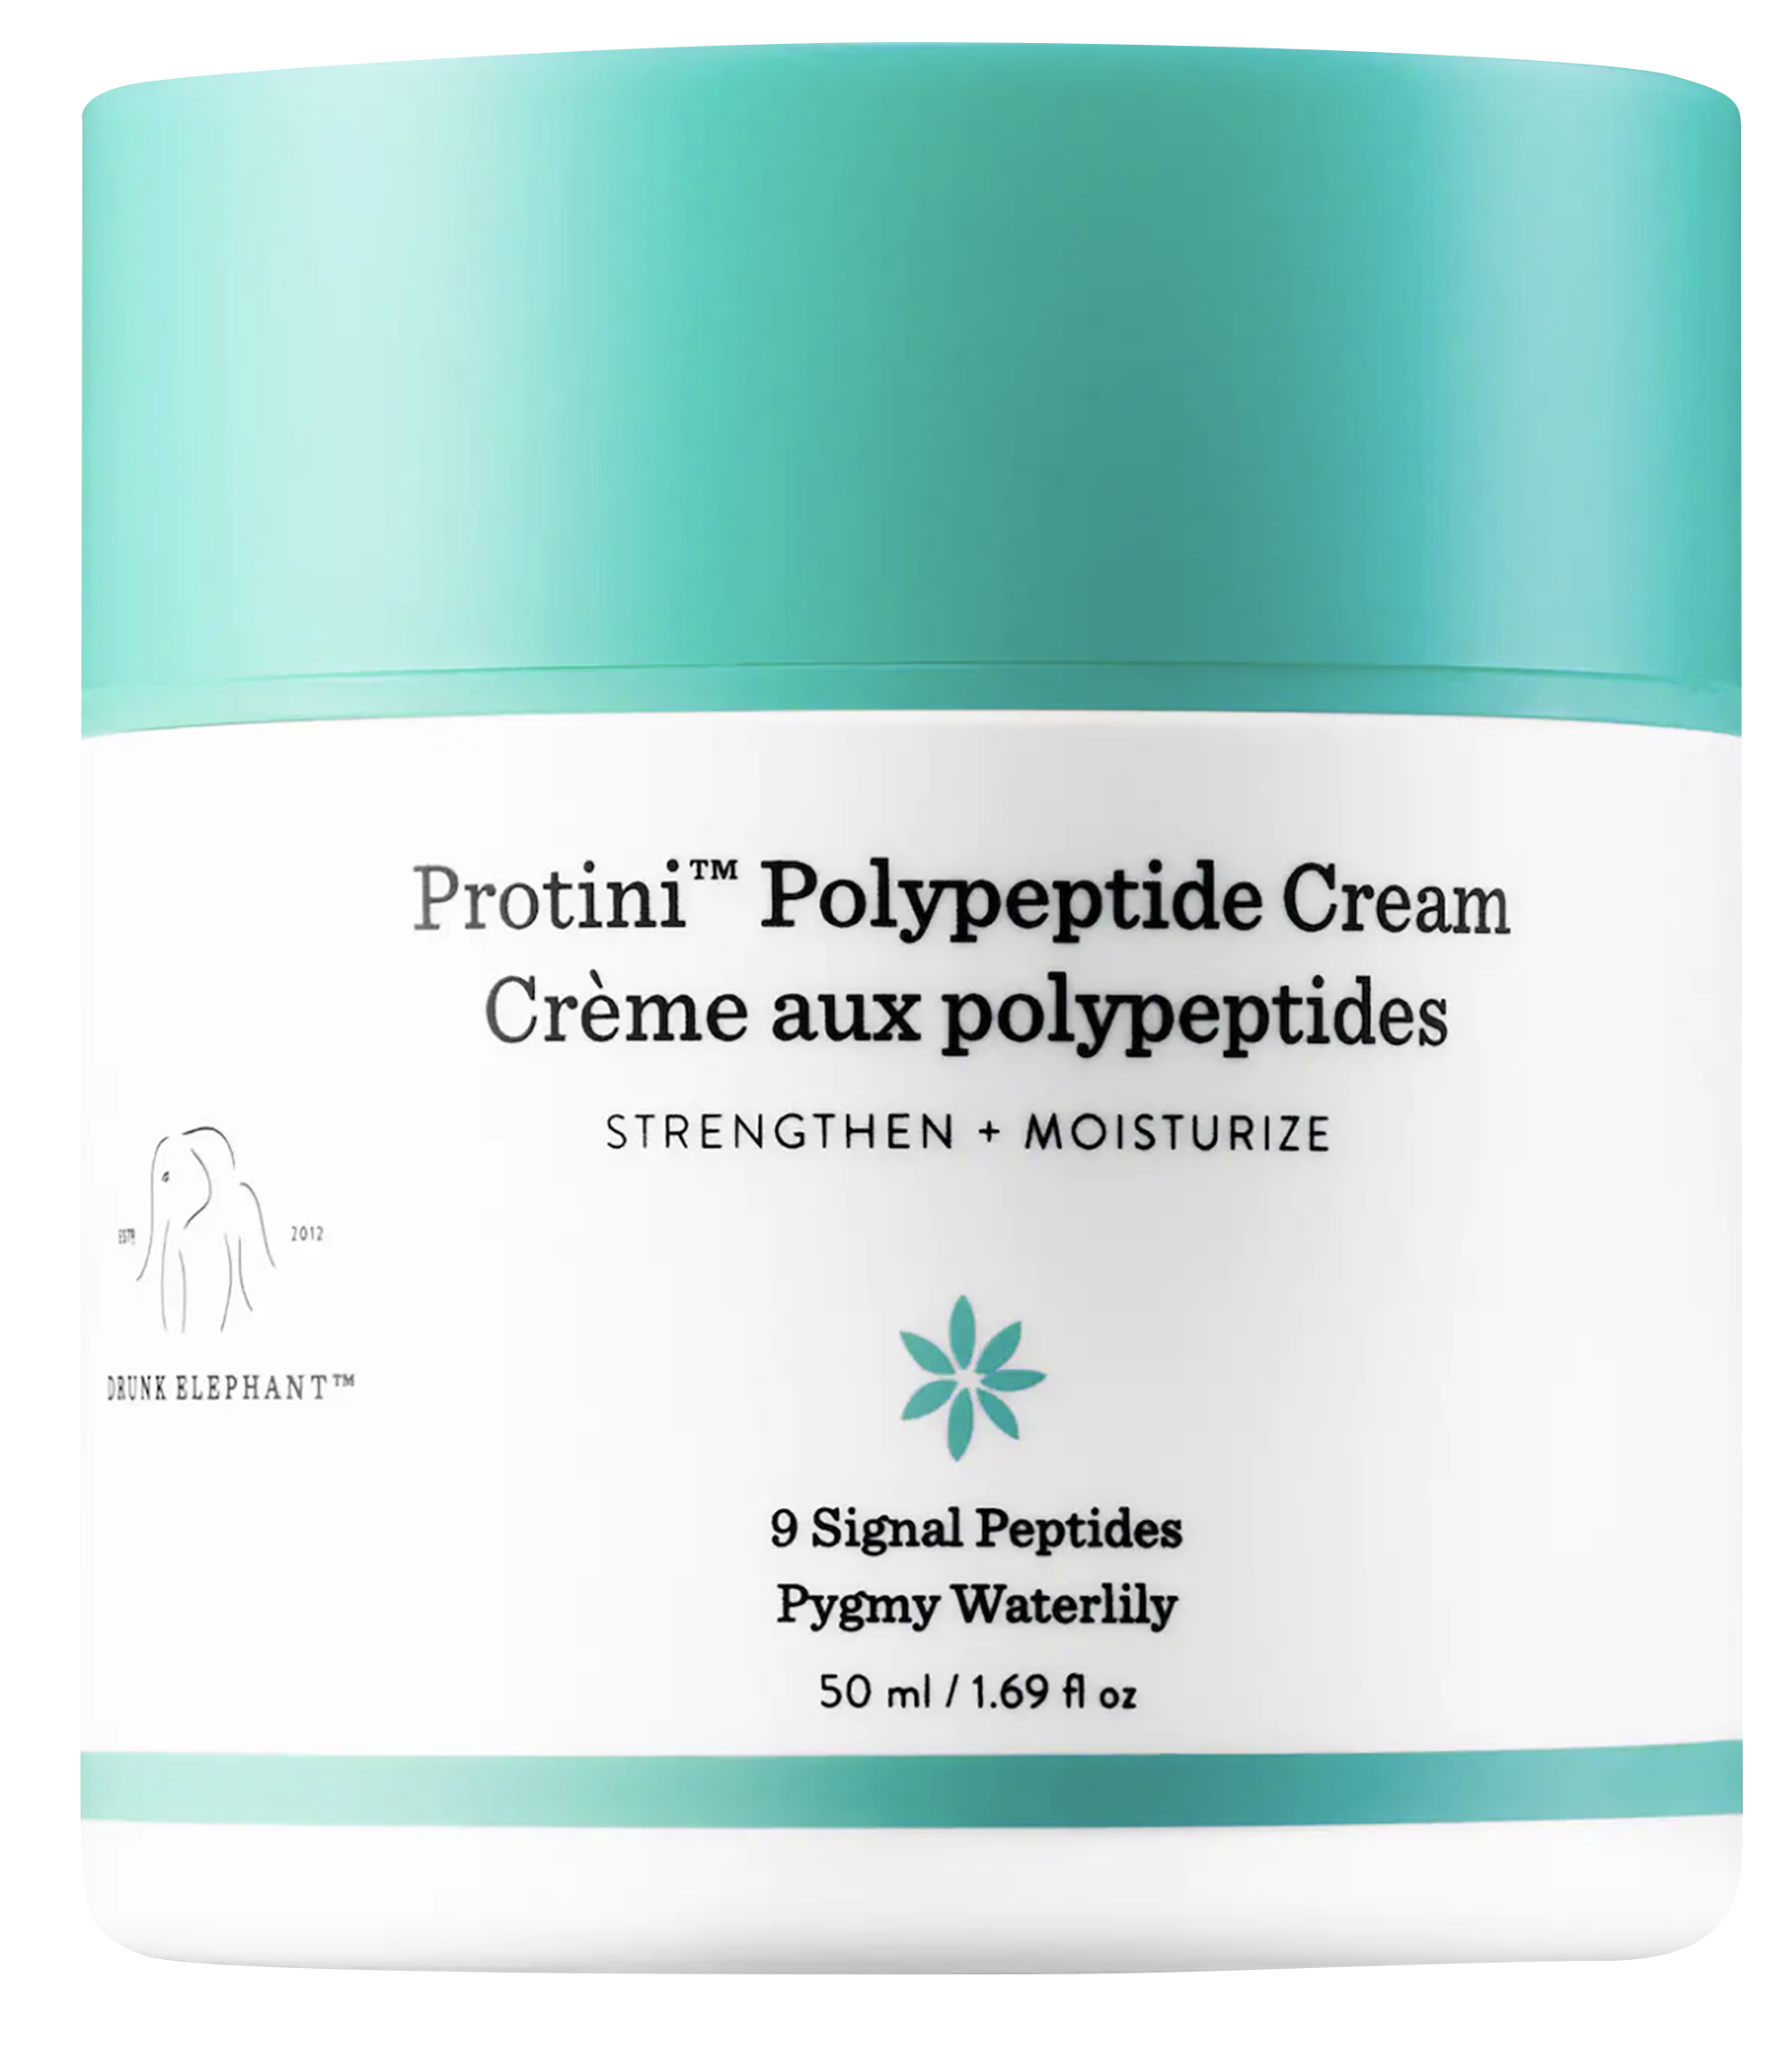 Drank elephant крем. Protini polypeptide Cream. Drunk Elephant крем. Protini polypeptide Cream Creme aux polypeptides. Protini polypeptide firm.